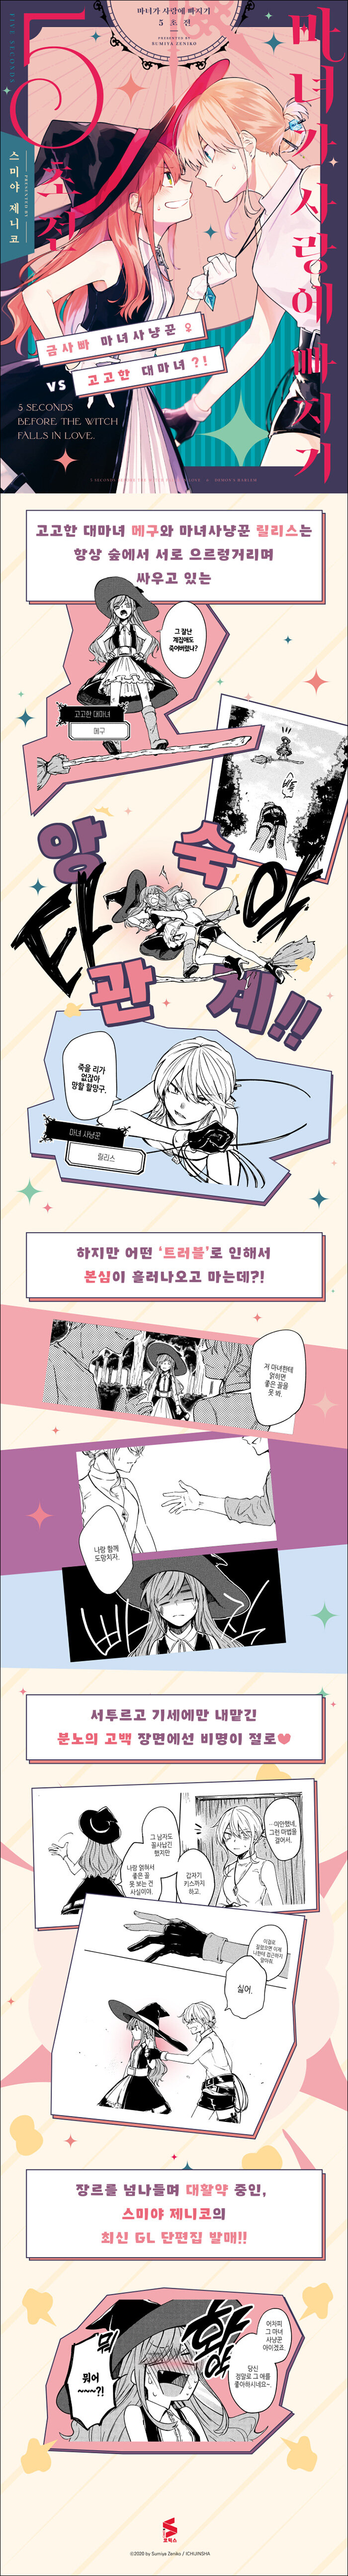 마녀가 사랑에 빠지기 5초 전 - 만화 E북 - 리디